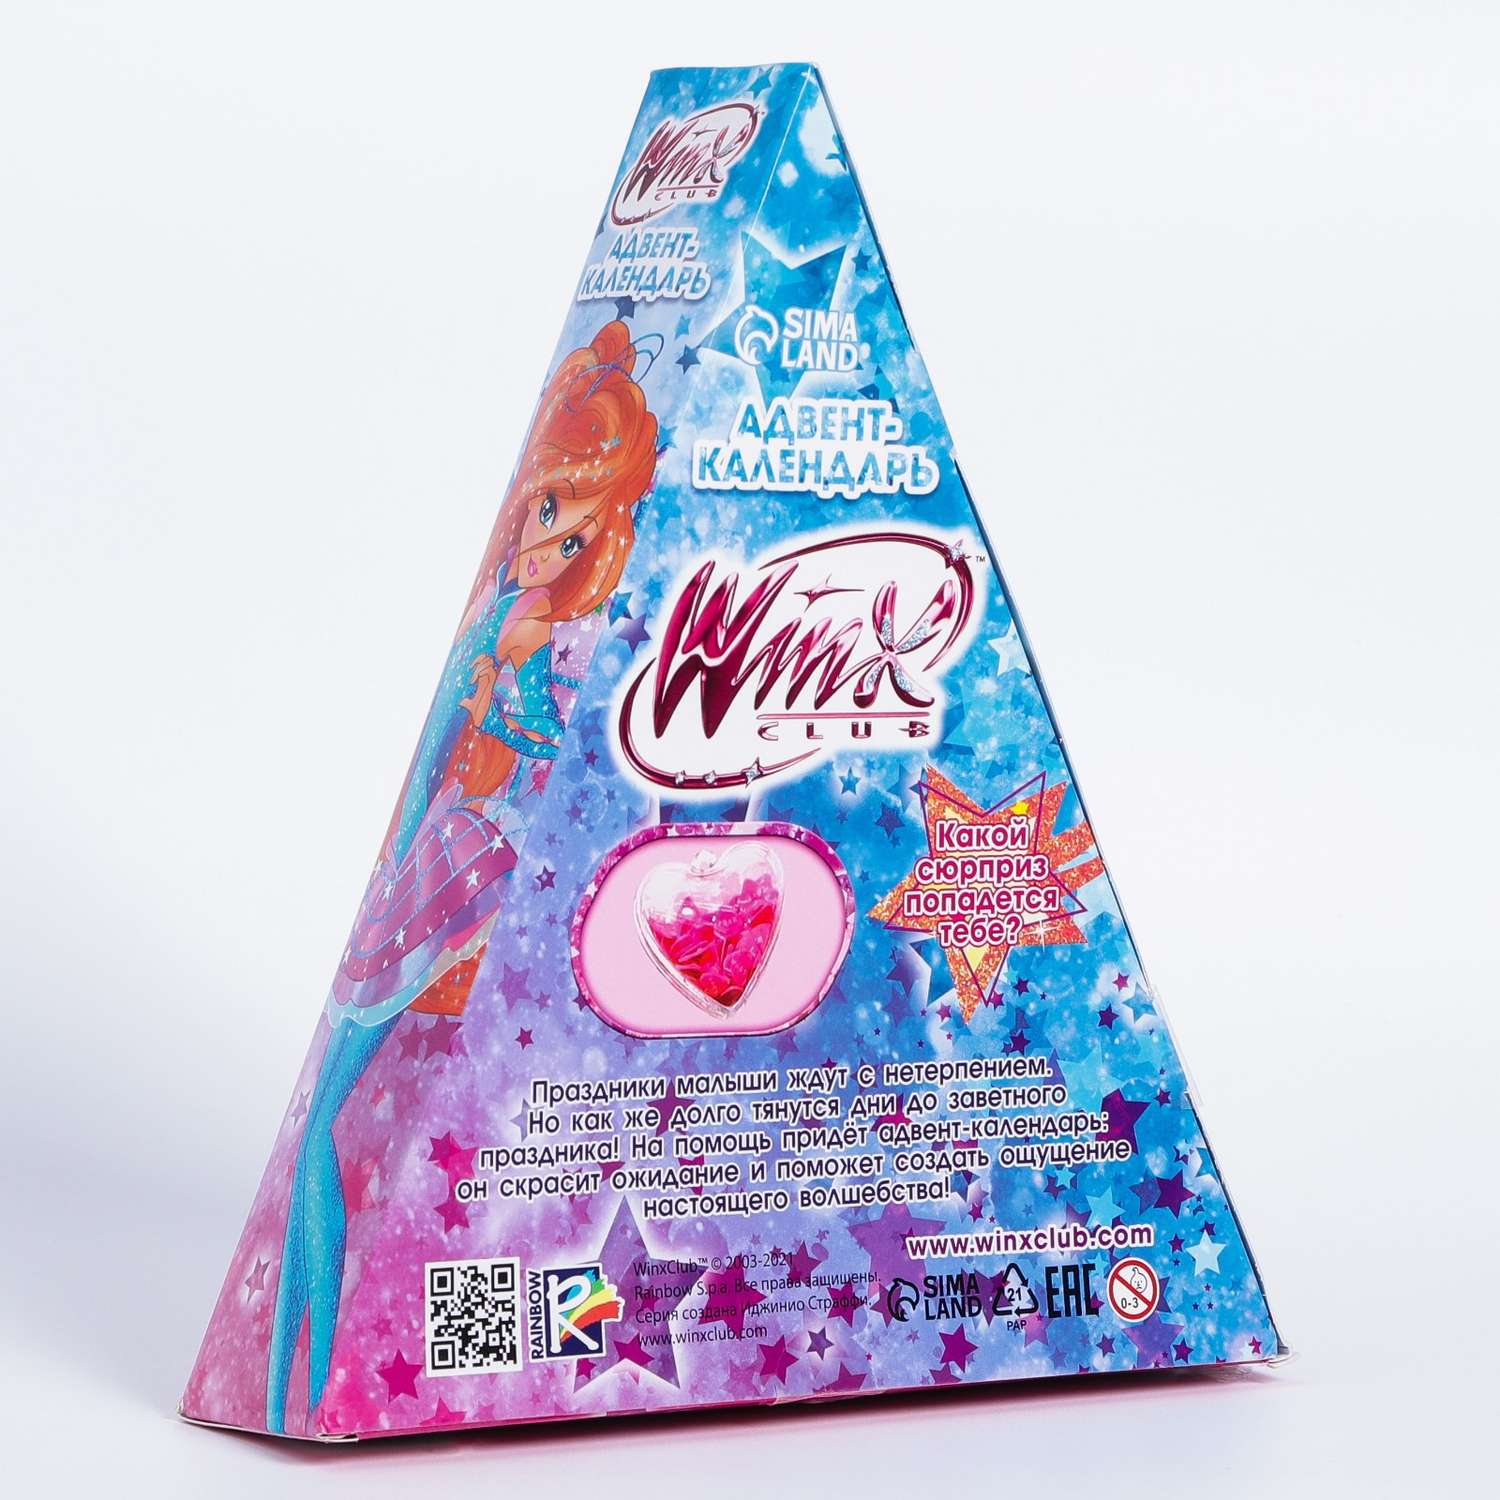 Адвент календарь WINX «Winx» набор химических опытов и сюрпризов - фото 10